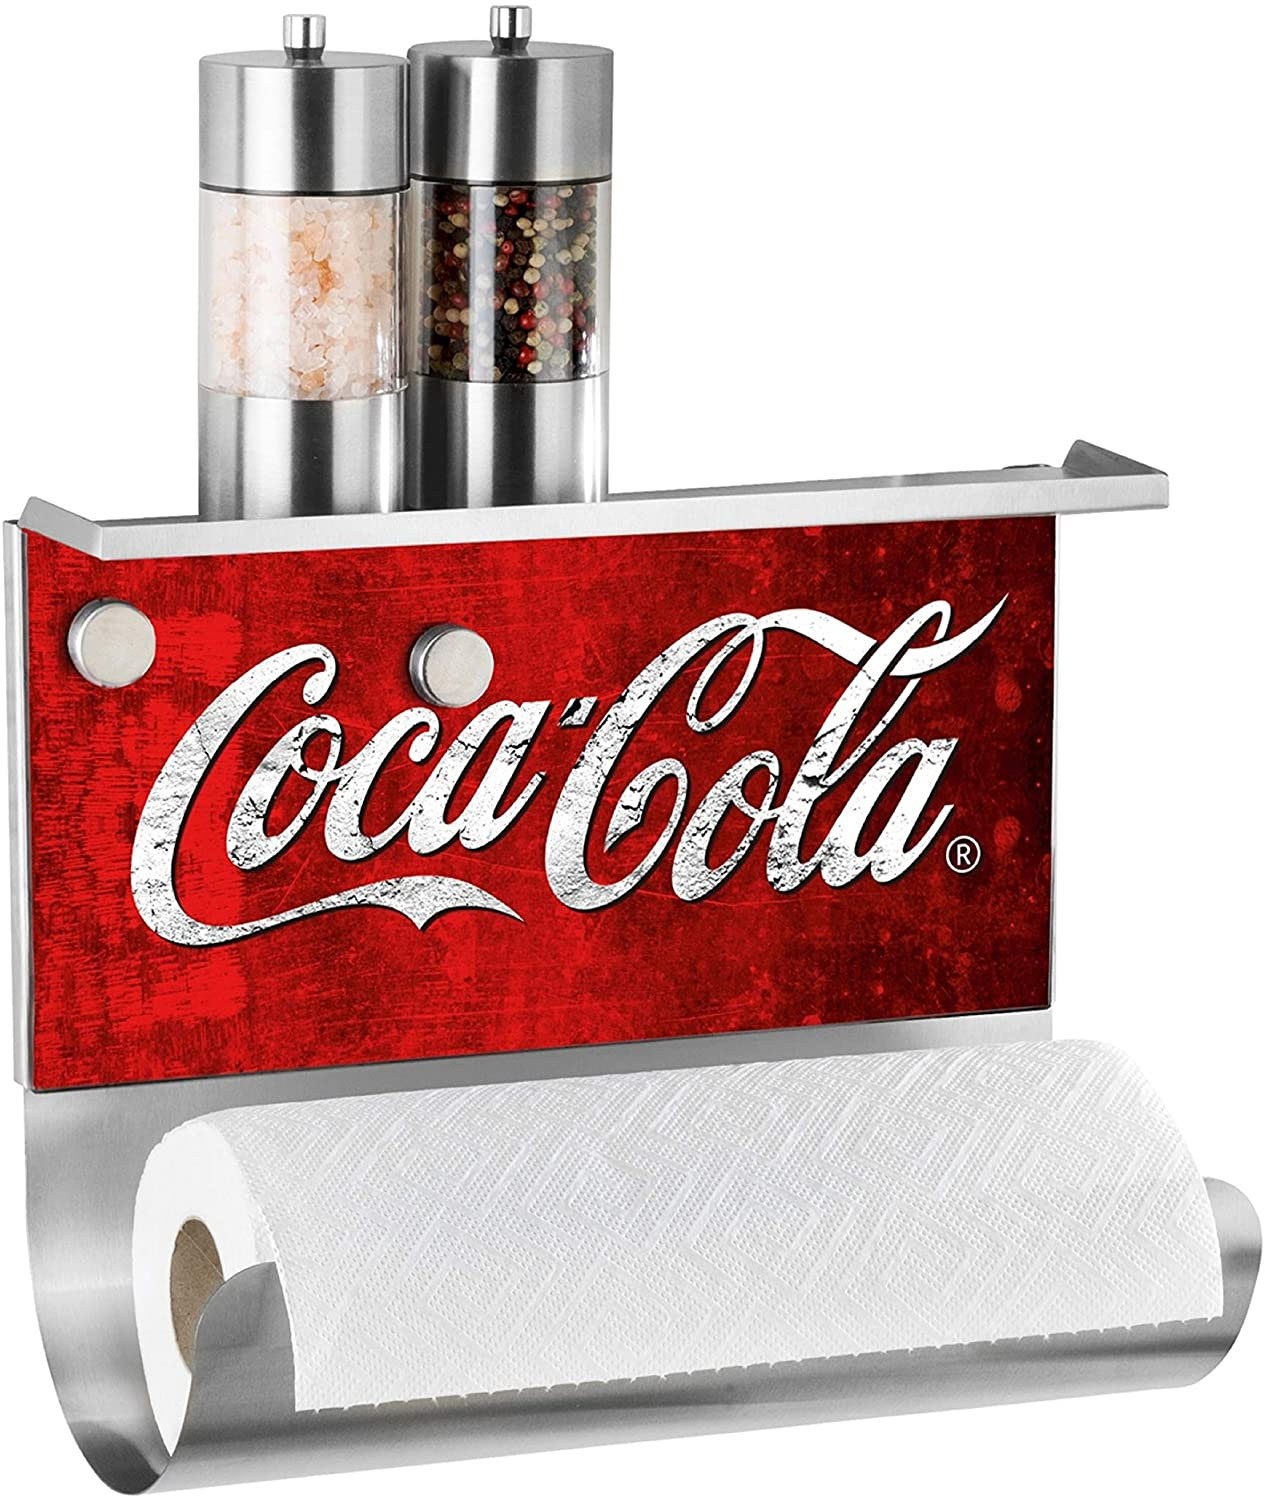 Küchen-Papier-Rollen-Halter mit Ablage für Salz-Pfeffer-Streuer oder Gewürze, magnetische Pinnwand, Motiv Coca-Cola, 14.5 x 30 x 26 cm